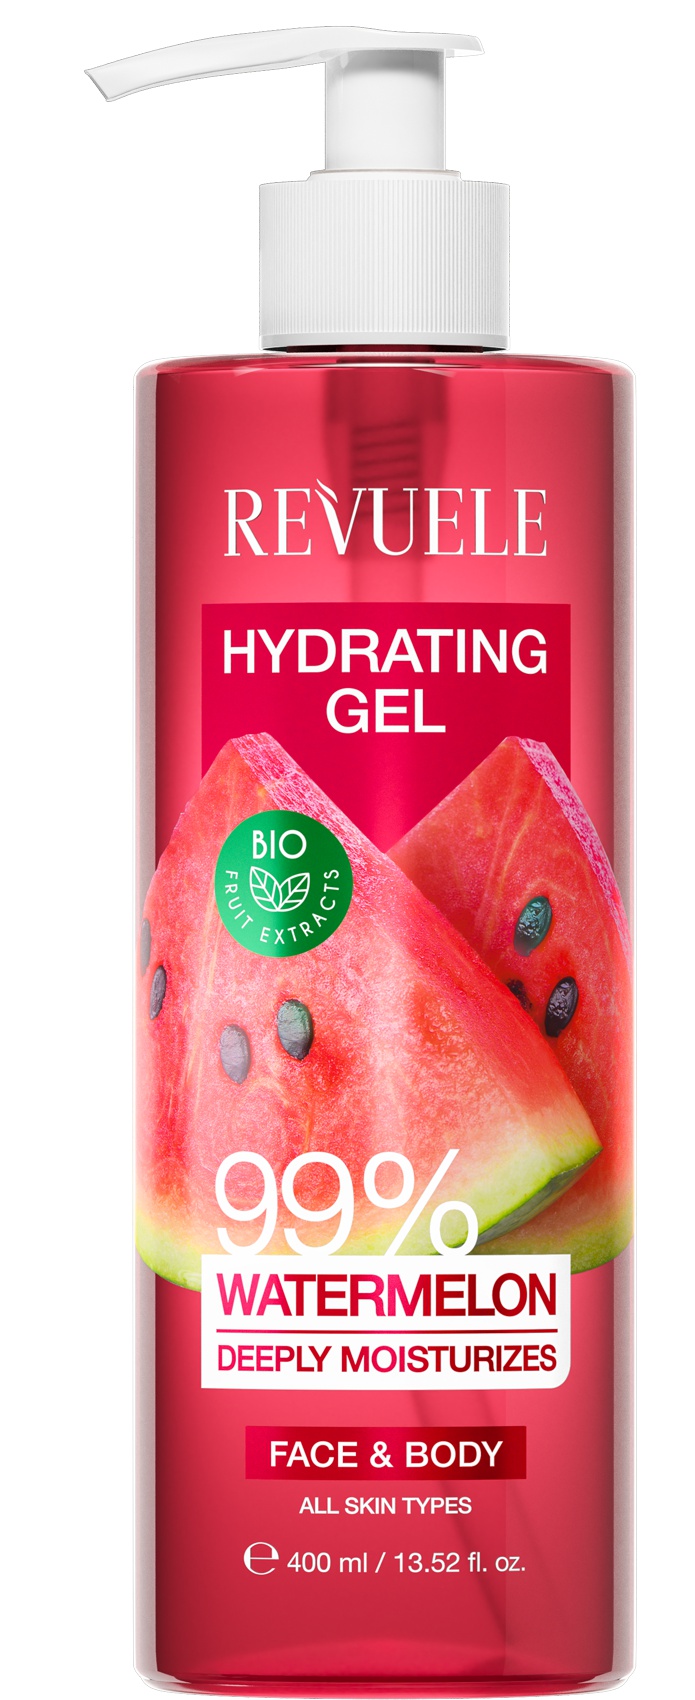 Revuele Hydrating Gel Watermelon 99%